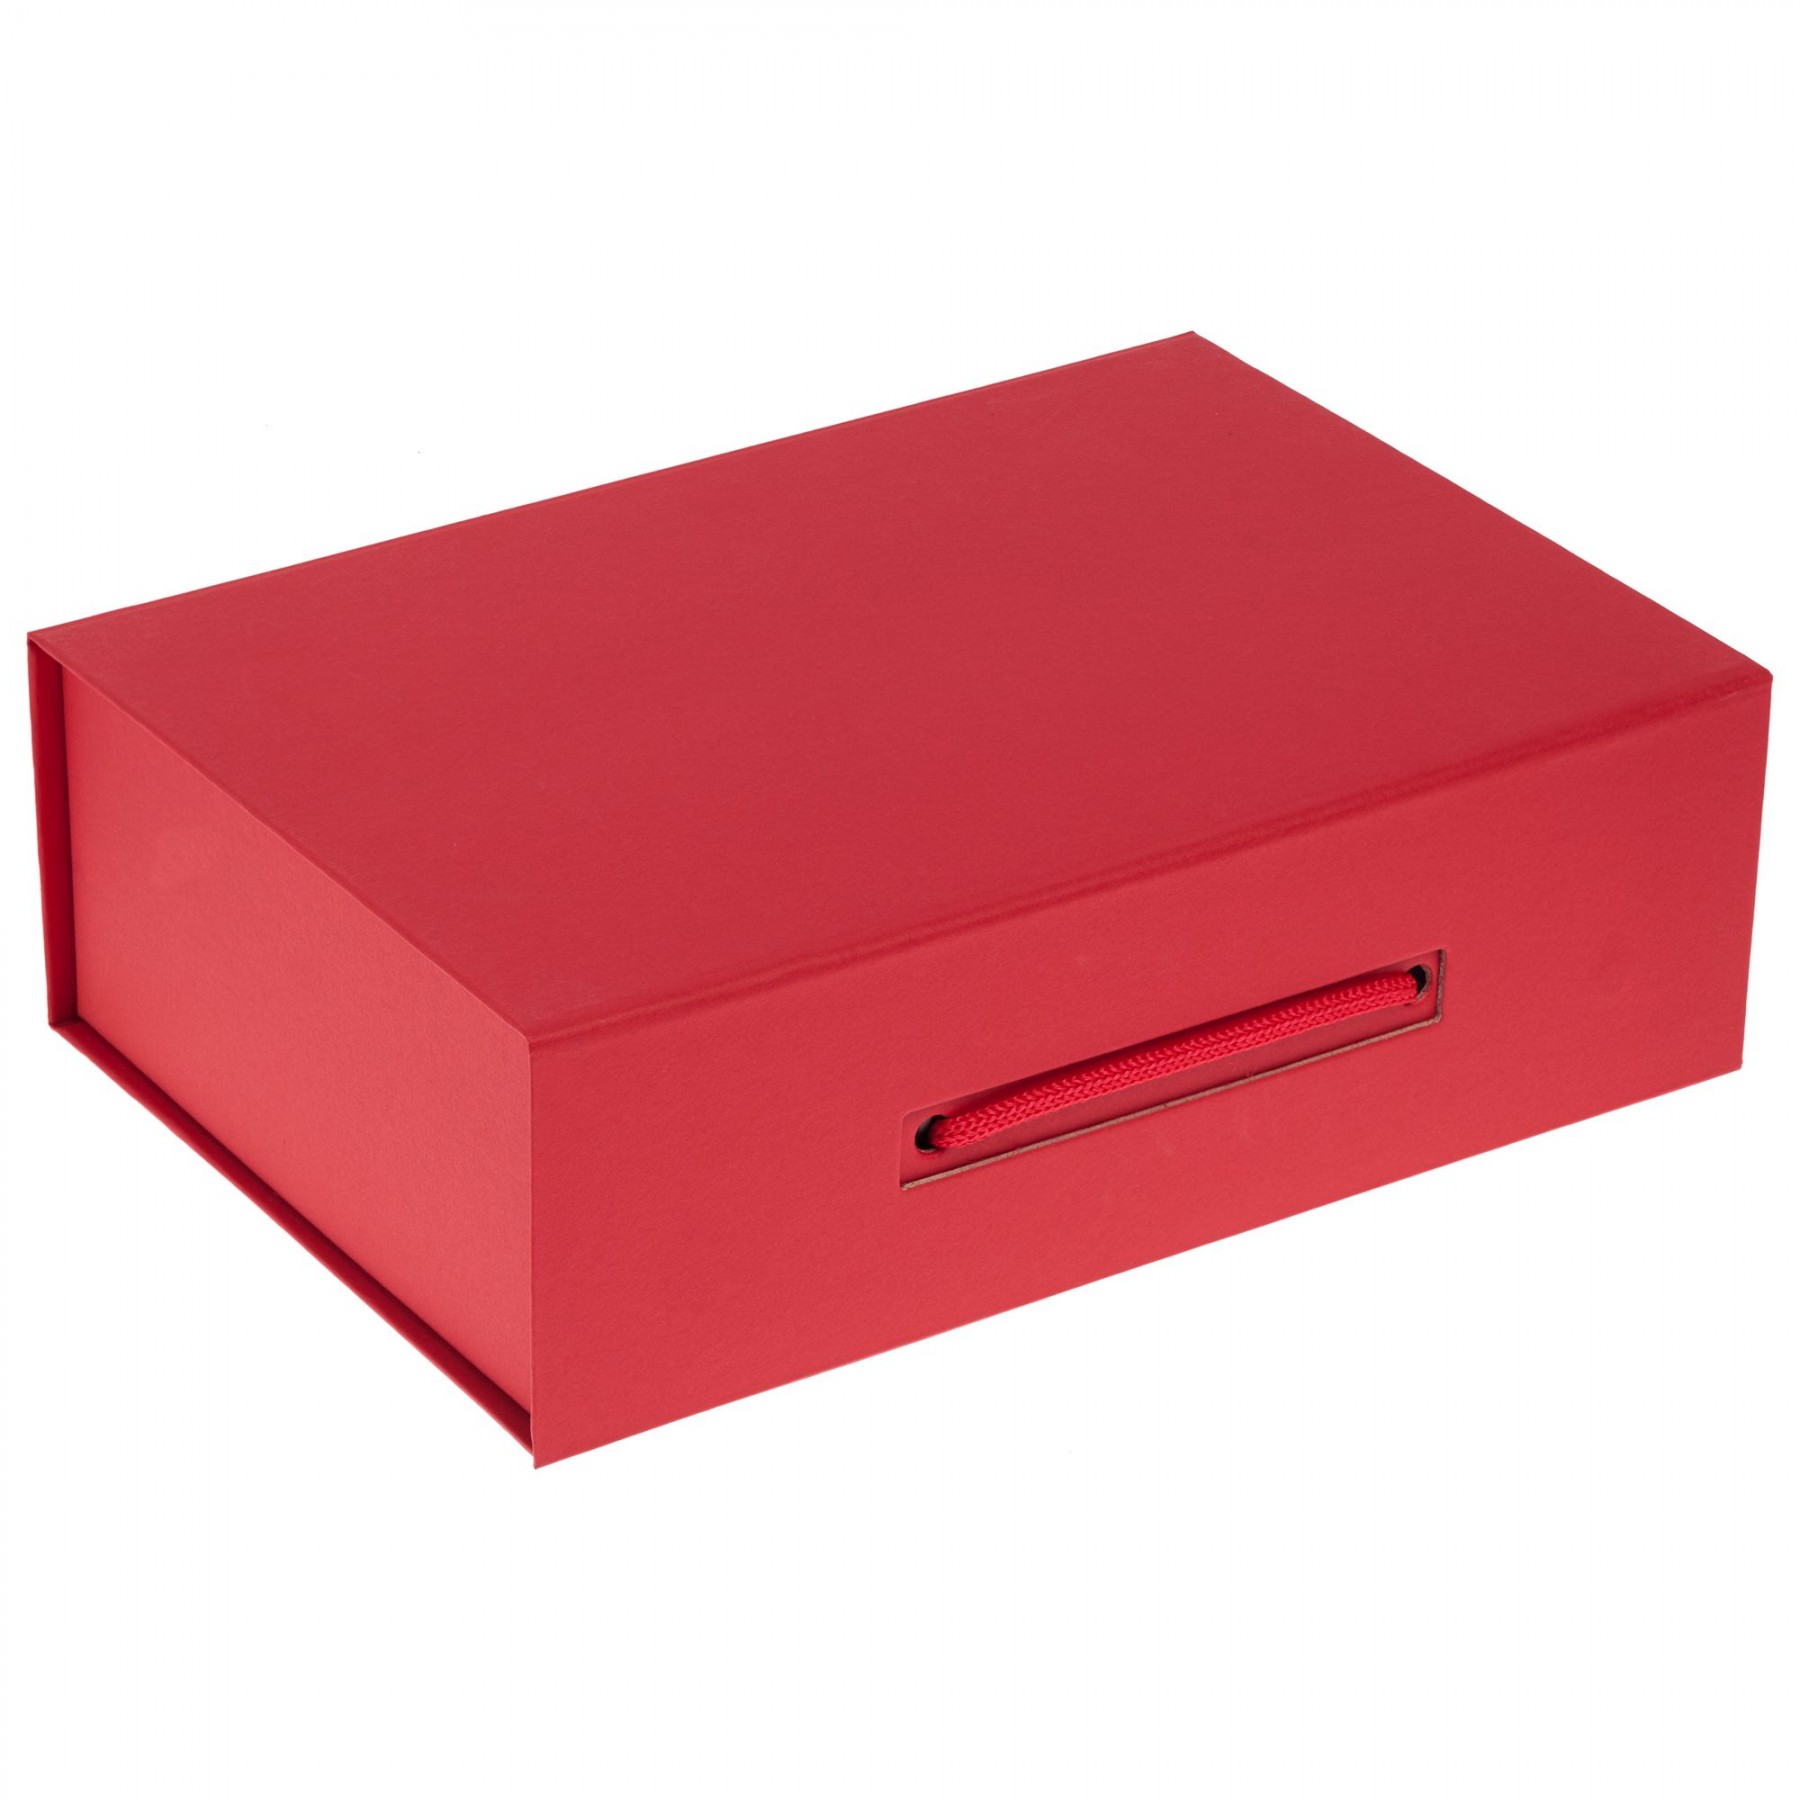 Купить упаковку в новосибирске. Коробка matter 7610. Подарочные коробки. Картонные подарочные коробки. Красные подарочные коробки.